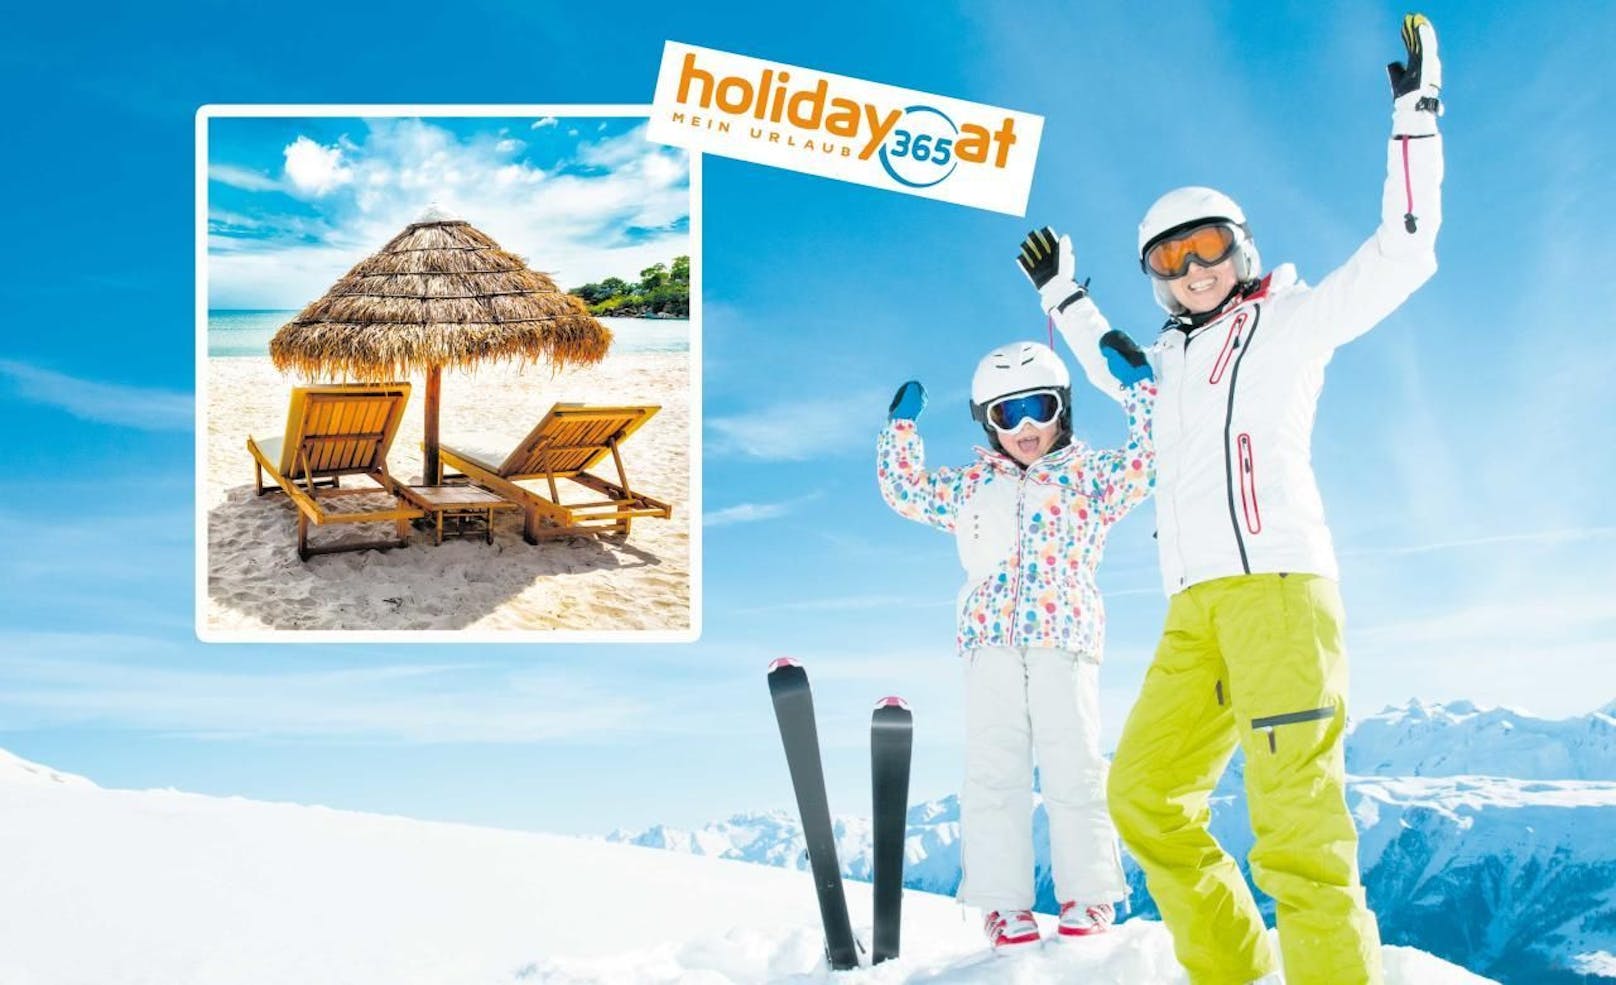 Strand oder Schnee: Holiday365.at bietet eine große Auswahl an Reisen zu Top-Preisen.